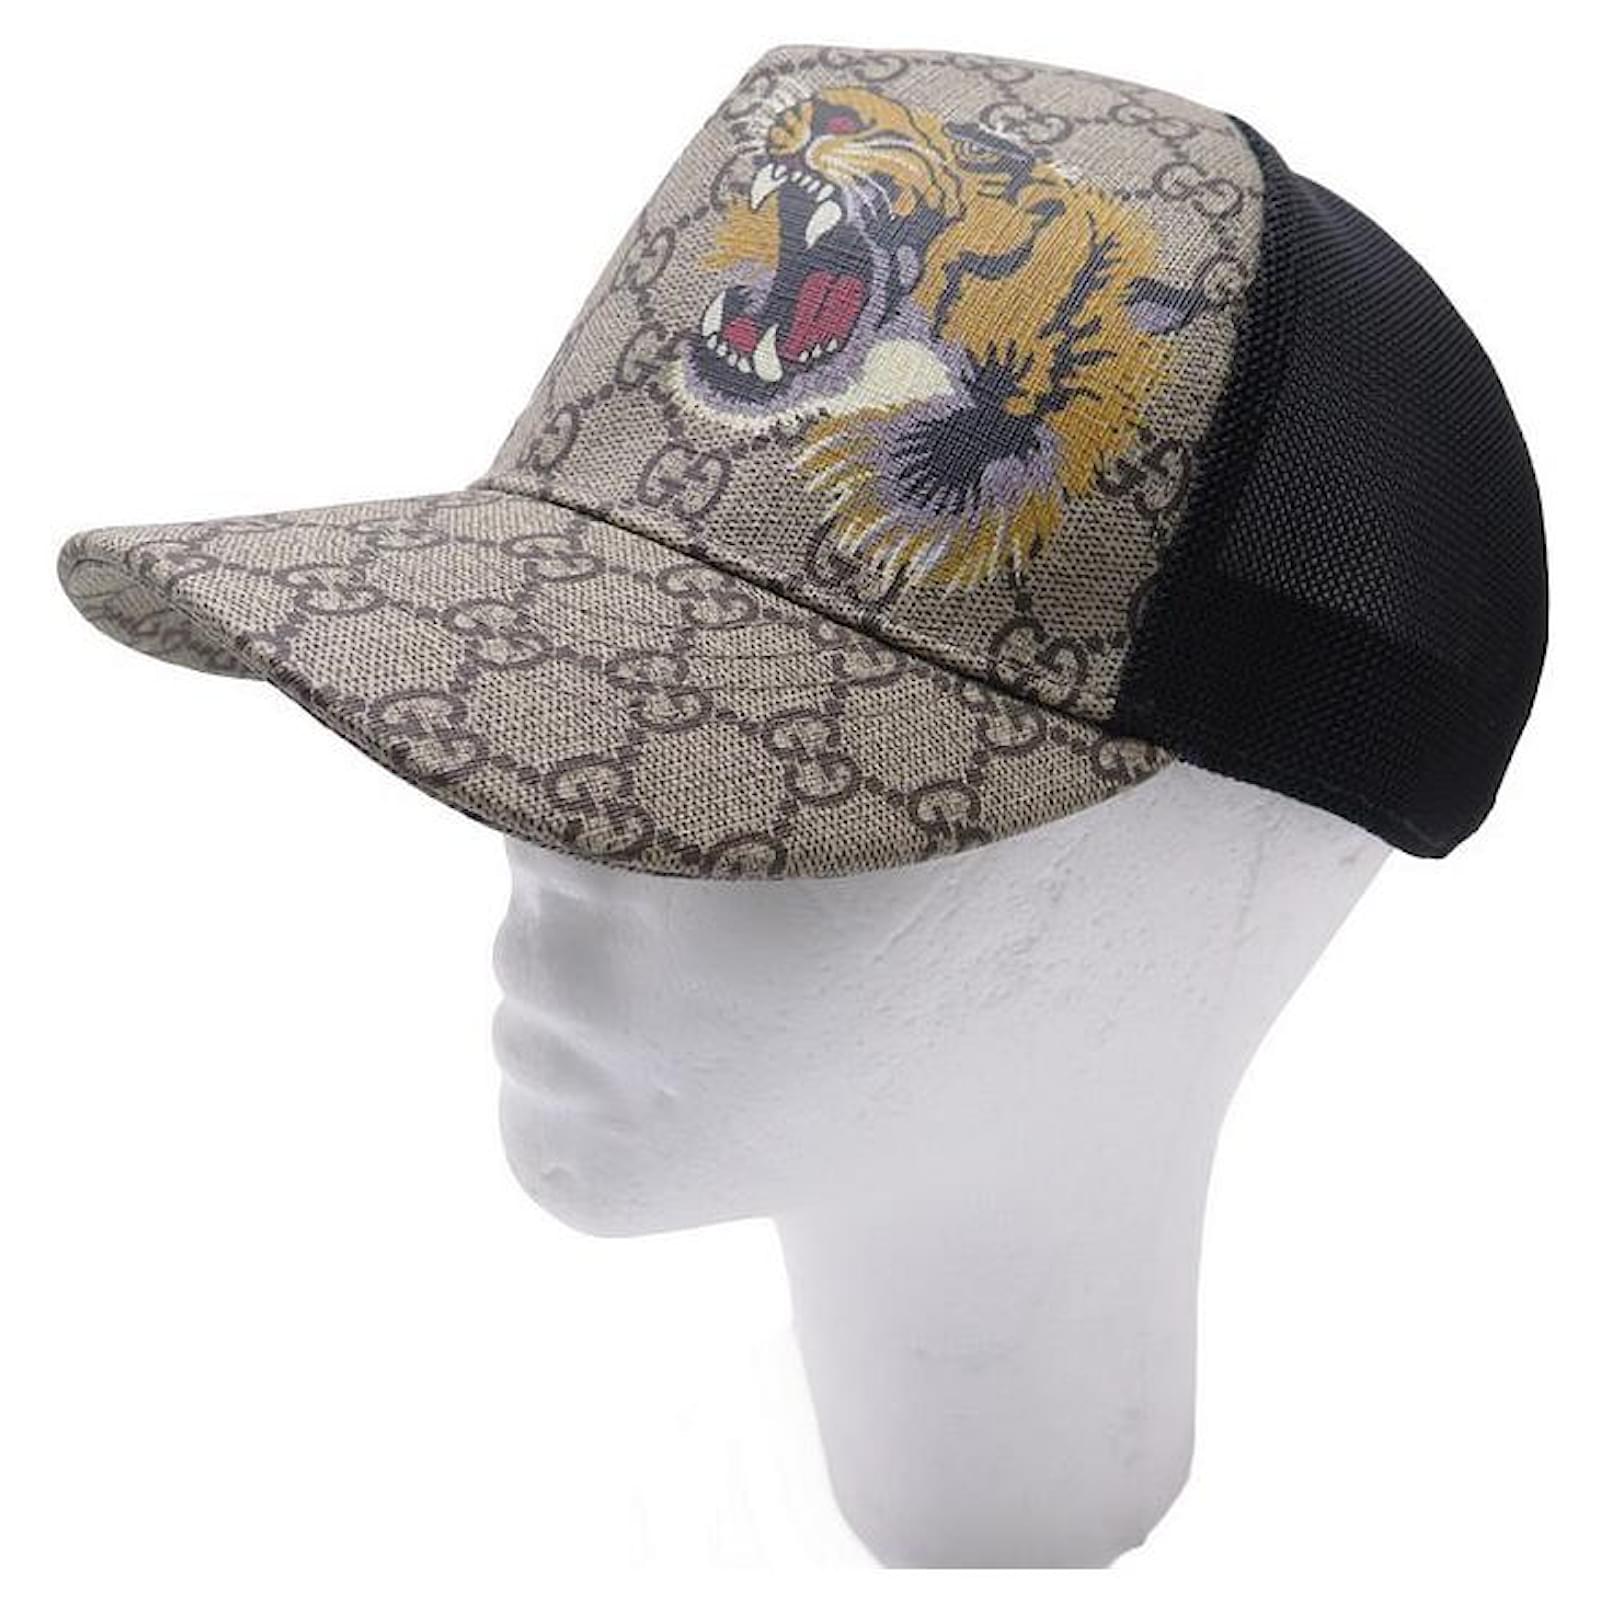 Gucci GG Supreme Canvas Hat